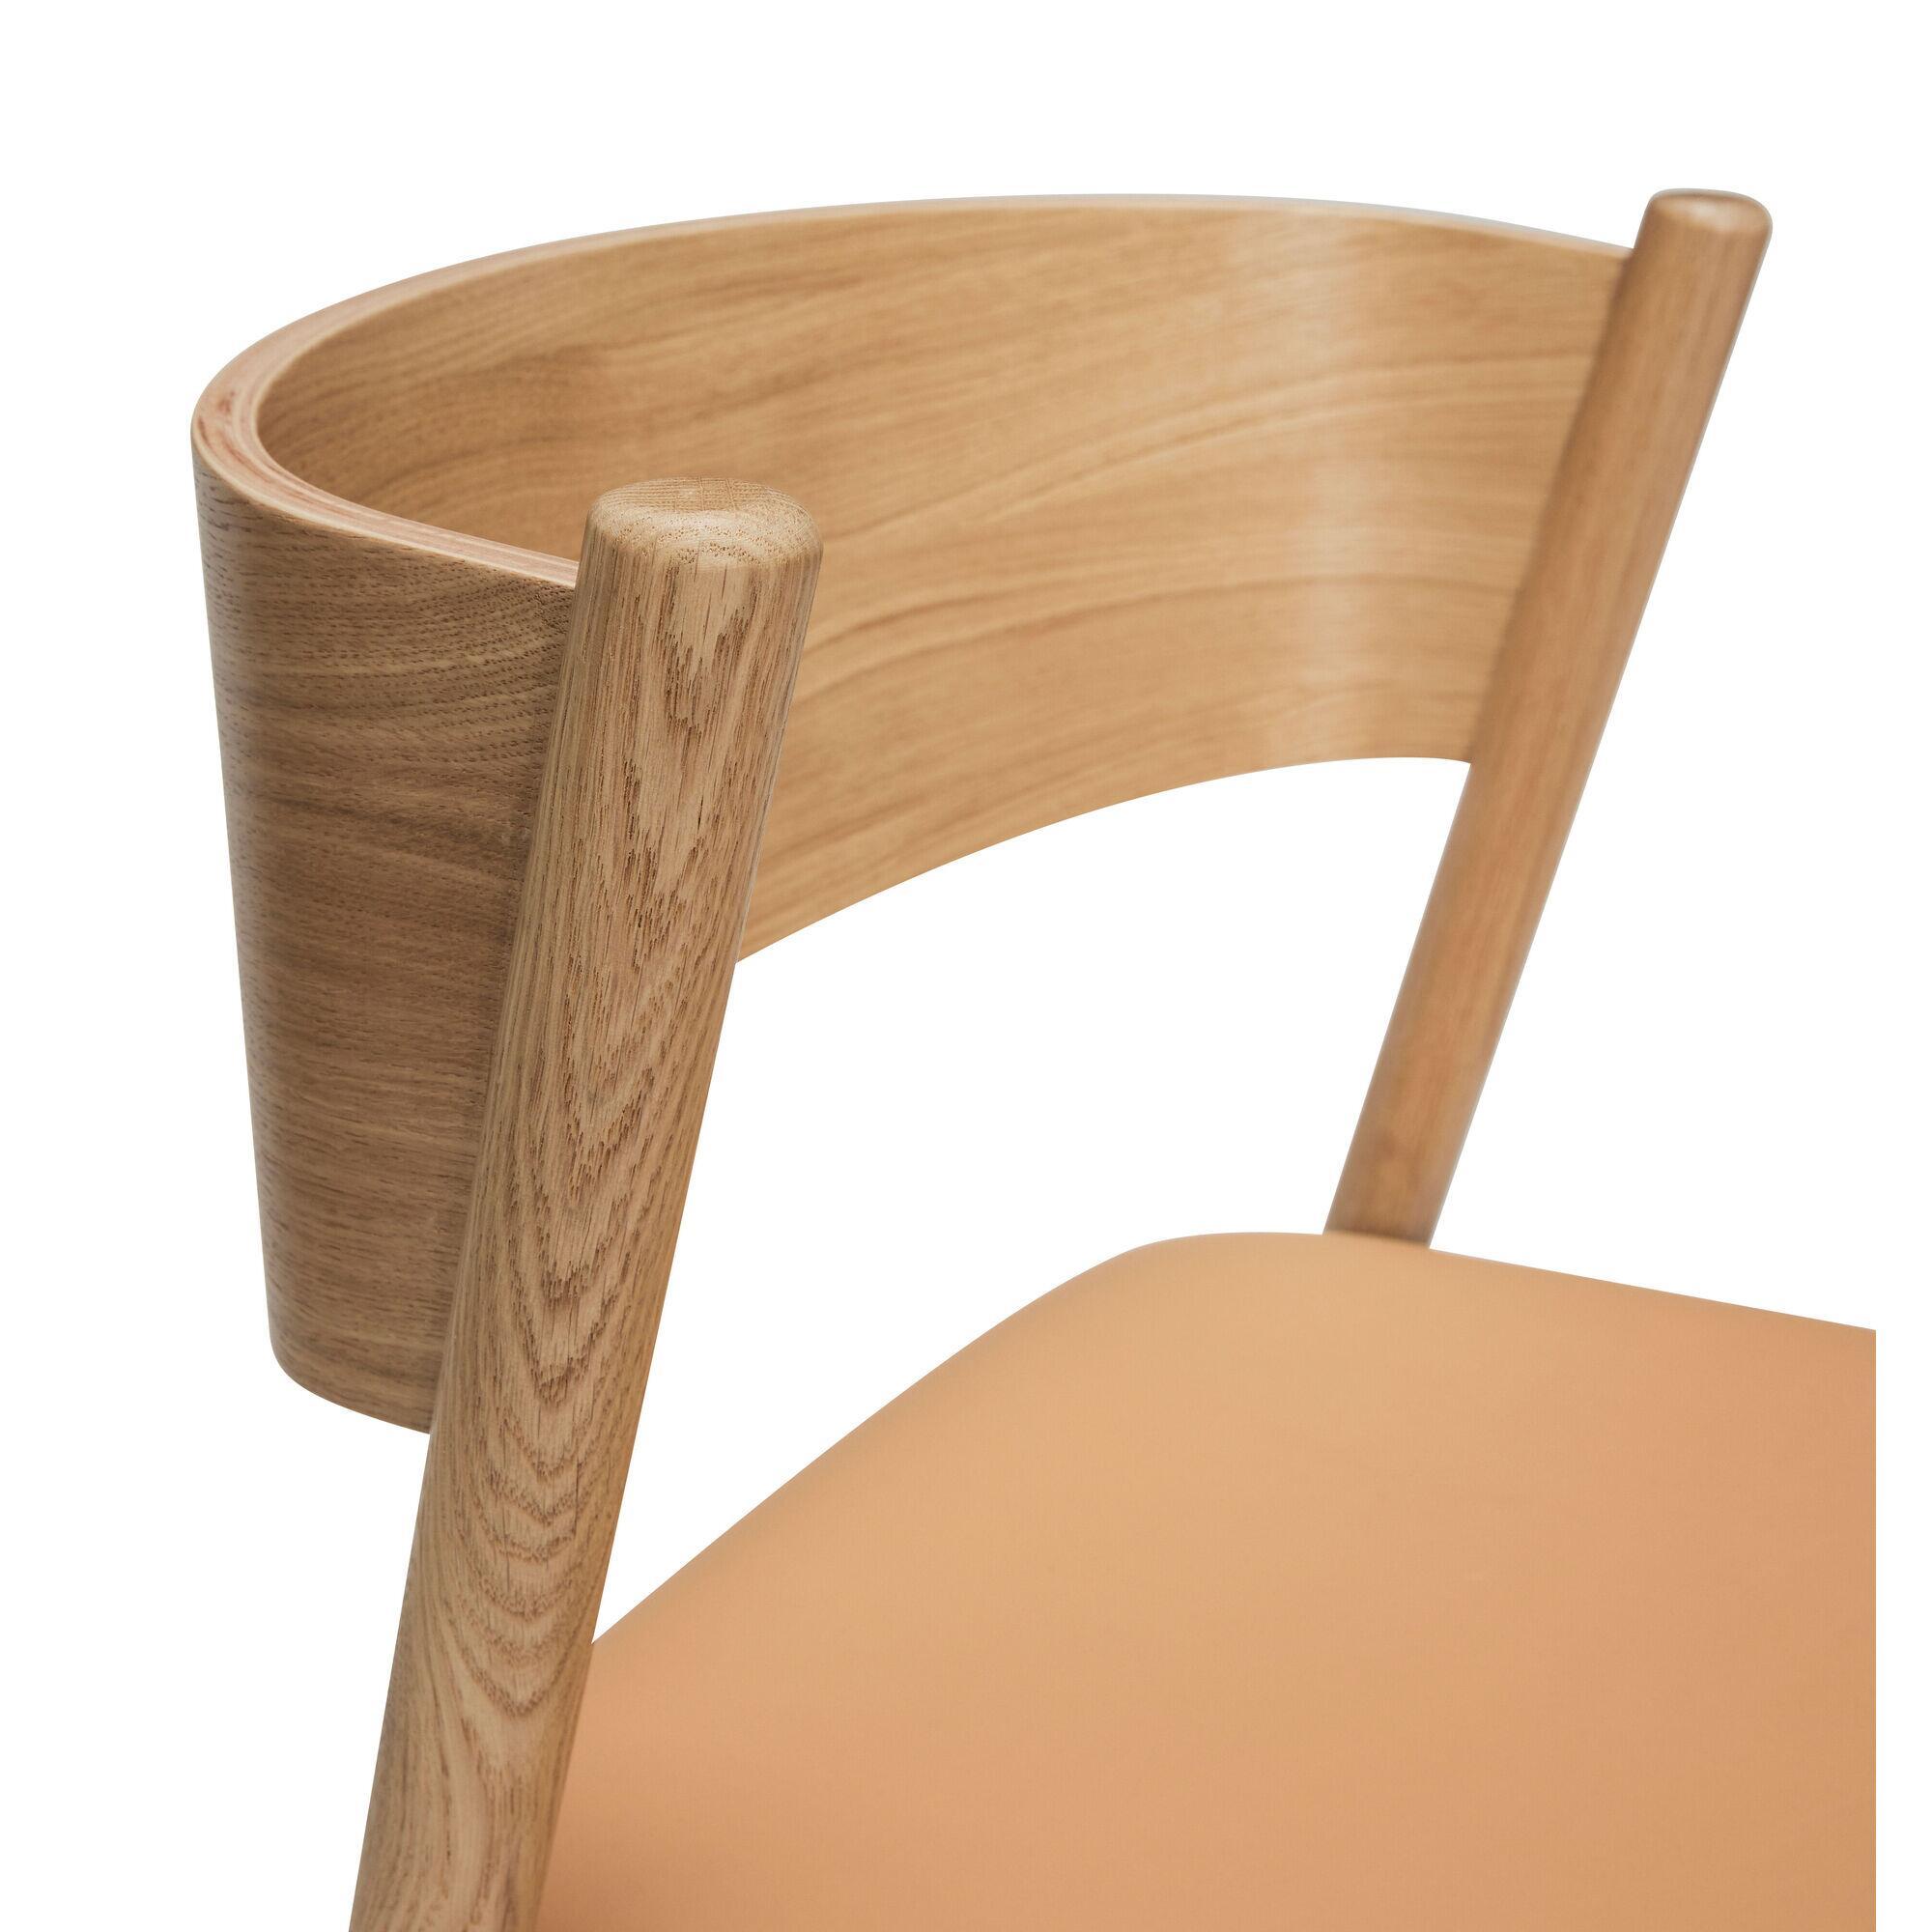  Oblique Spisestol Sæde - Natur fra Hübsch Interiør i Læder, Egetræsfiner, Egetræ (Varenr: 331603)